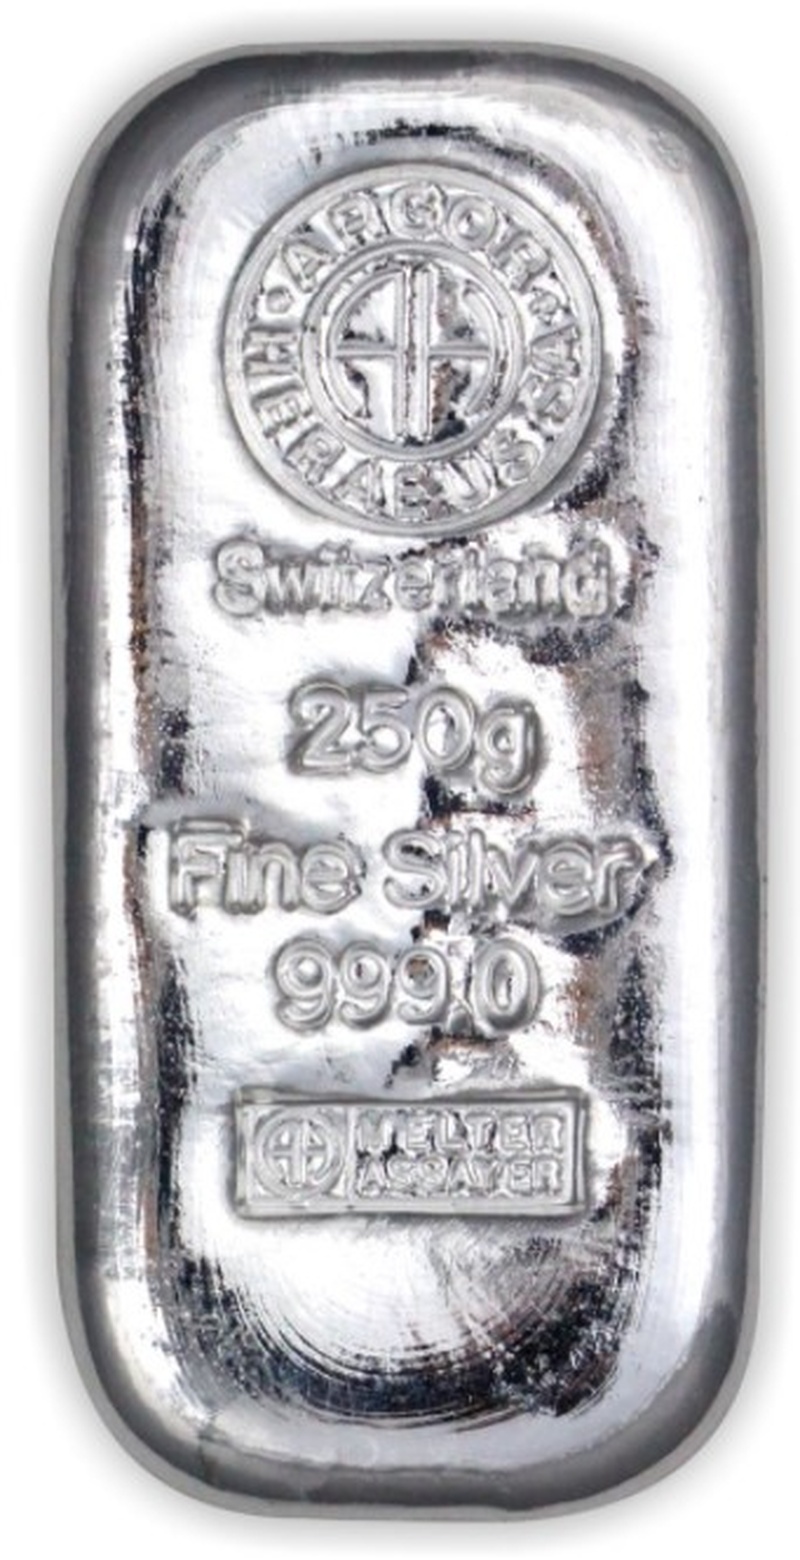 Argor-Heraeus 250 Gram Zilveren Baar